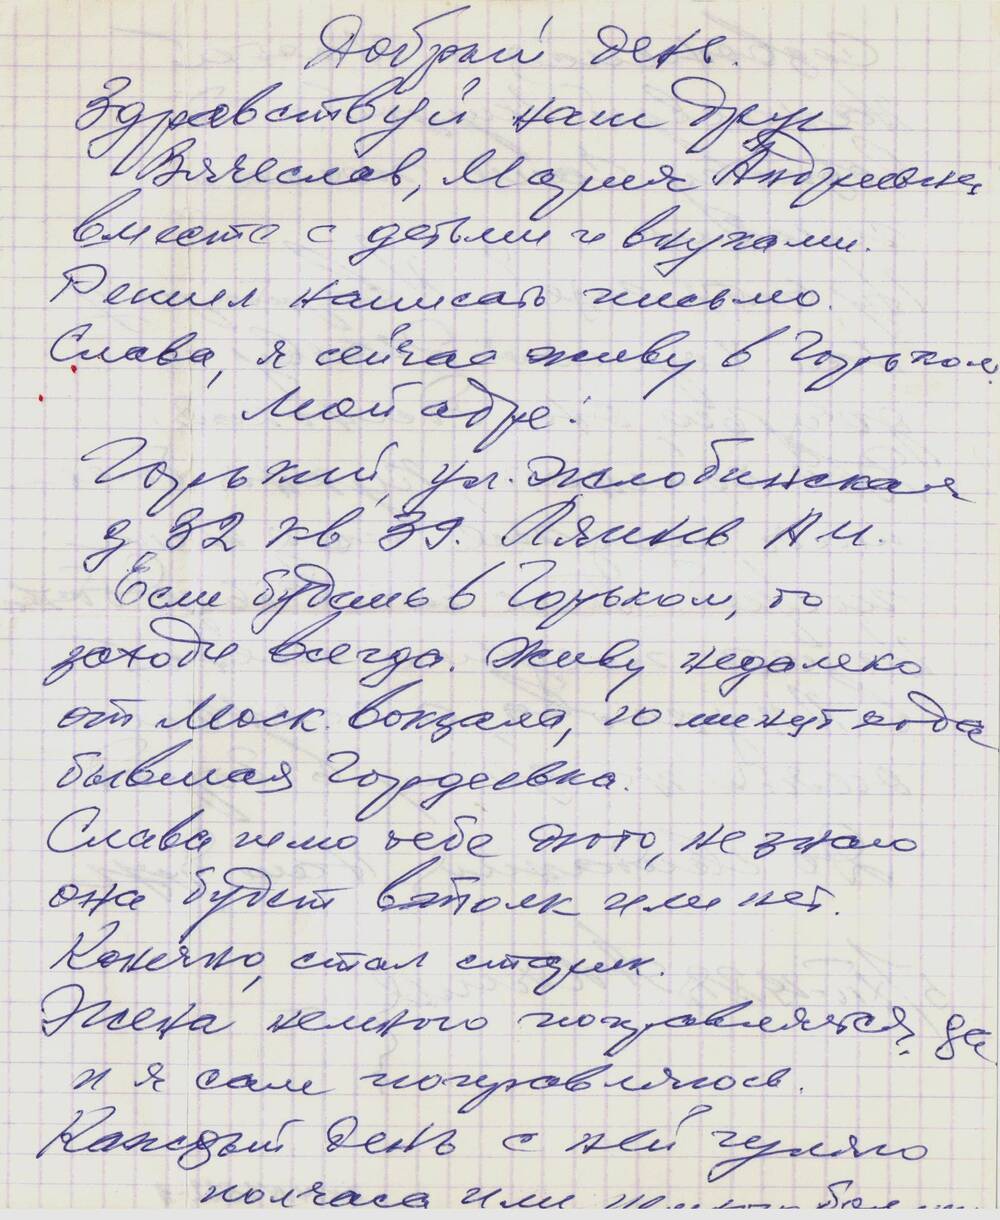 Письмо Громову В.А. от участника ВОВ и его однокурсника А.Ляпнева, о себе и материалах для музея.1988 г